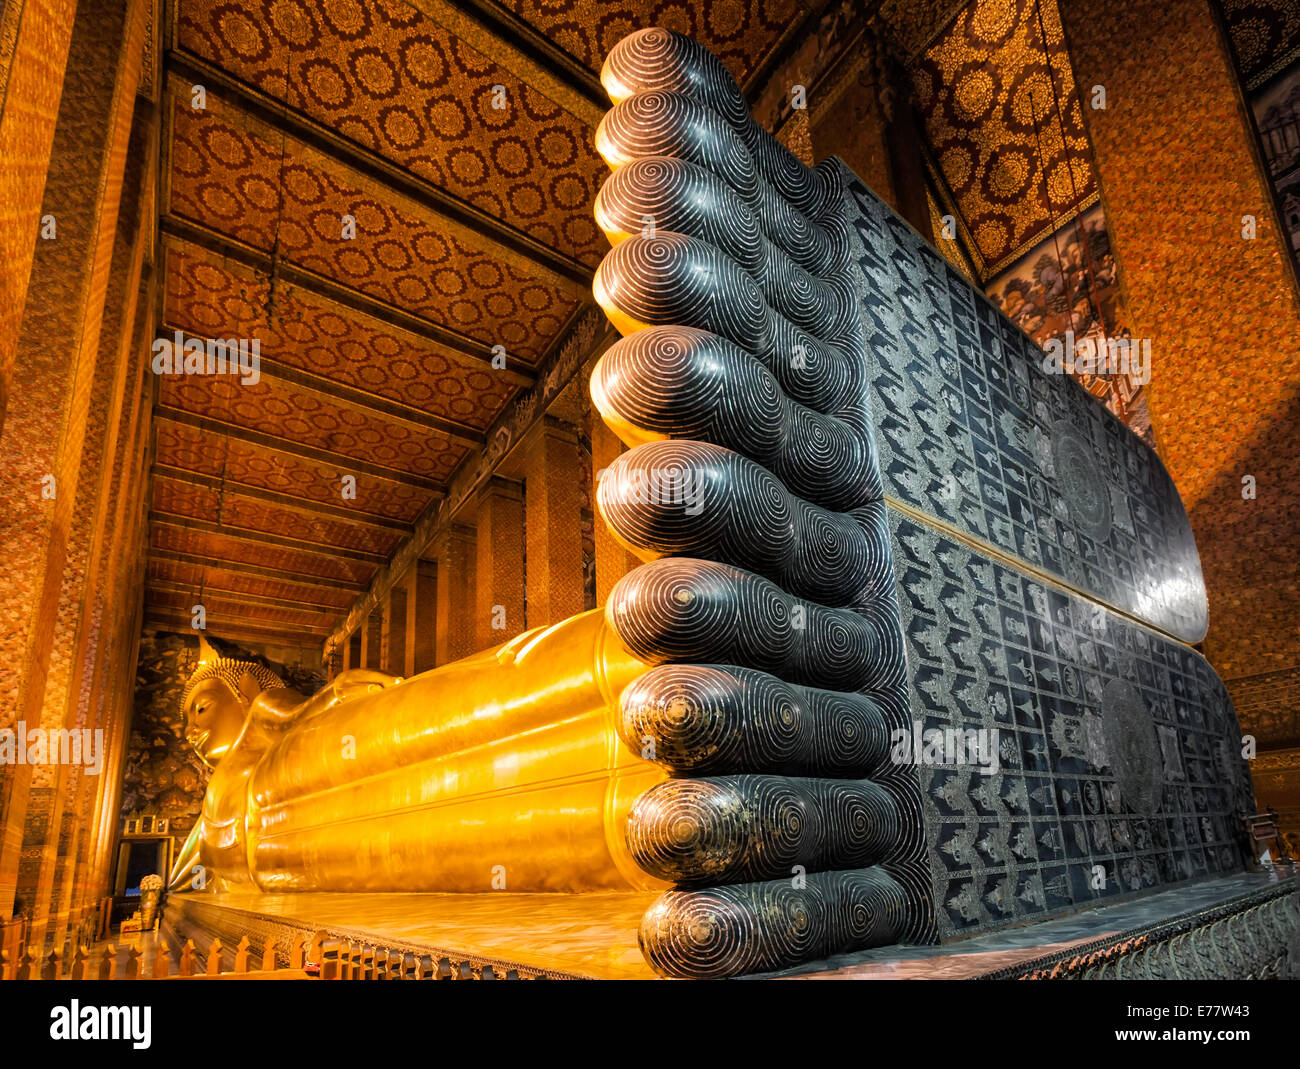 Buda reclinado en el templo Wat Pho, en Bangkok, Tailandia Foto de stock